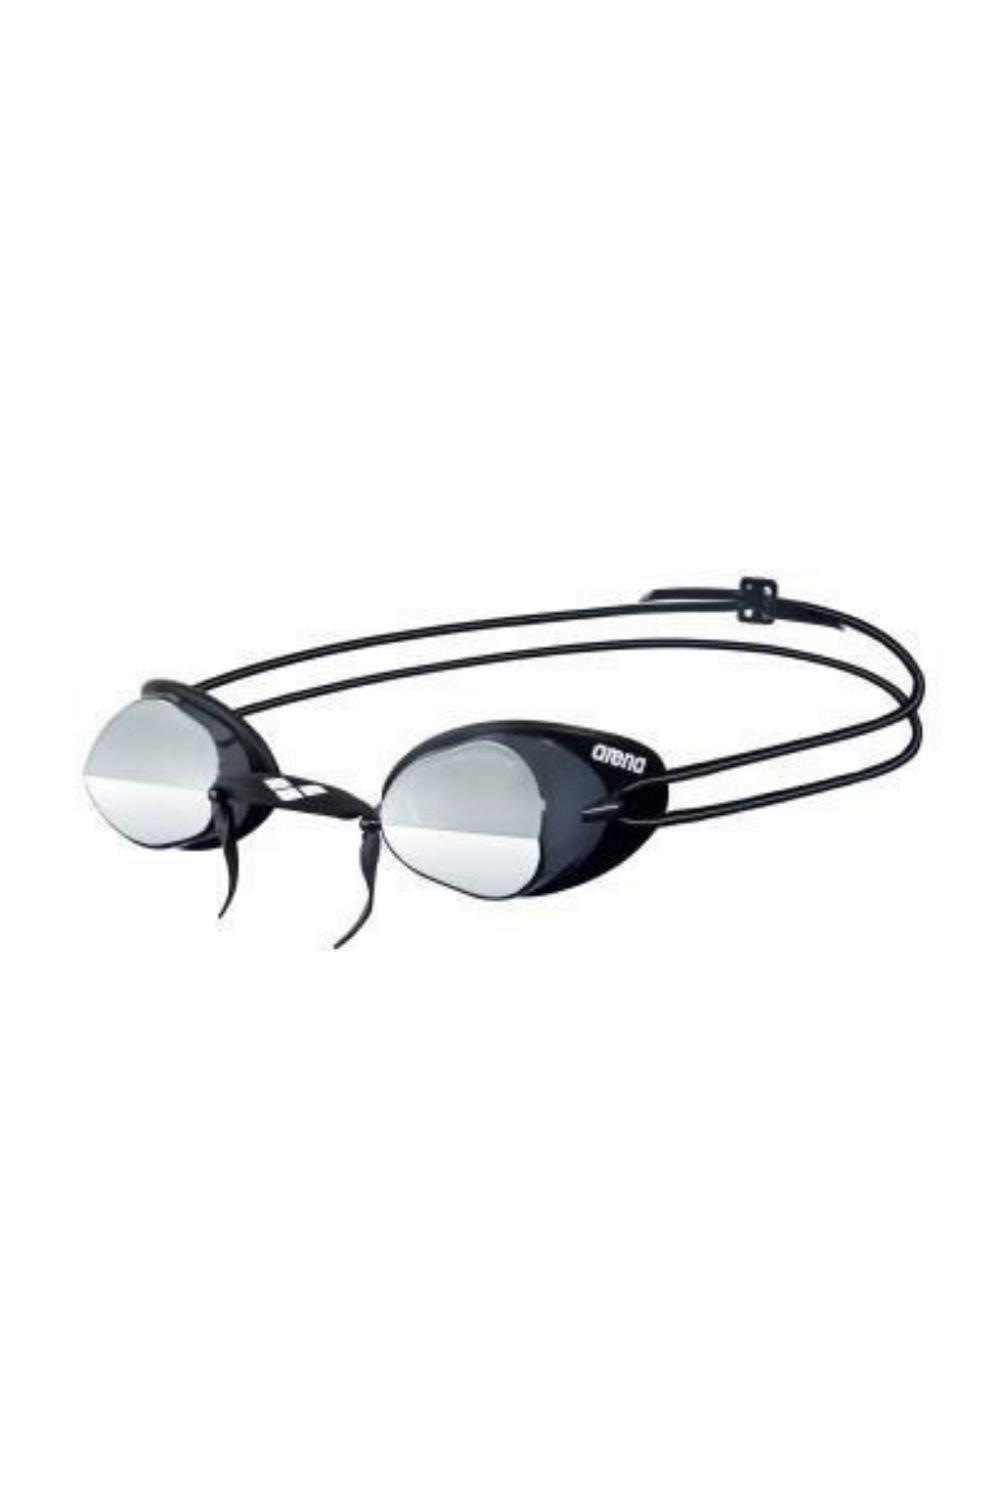 Очки для плавания Swedix Mirror - Зеркальные линзы Arena, серебро очки для плавания стартовые arena swedix черные